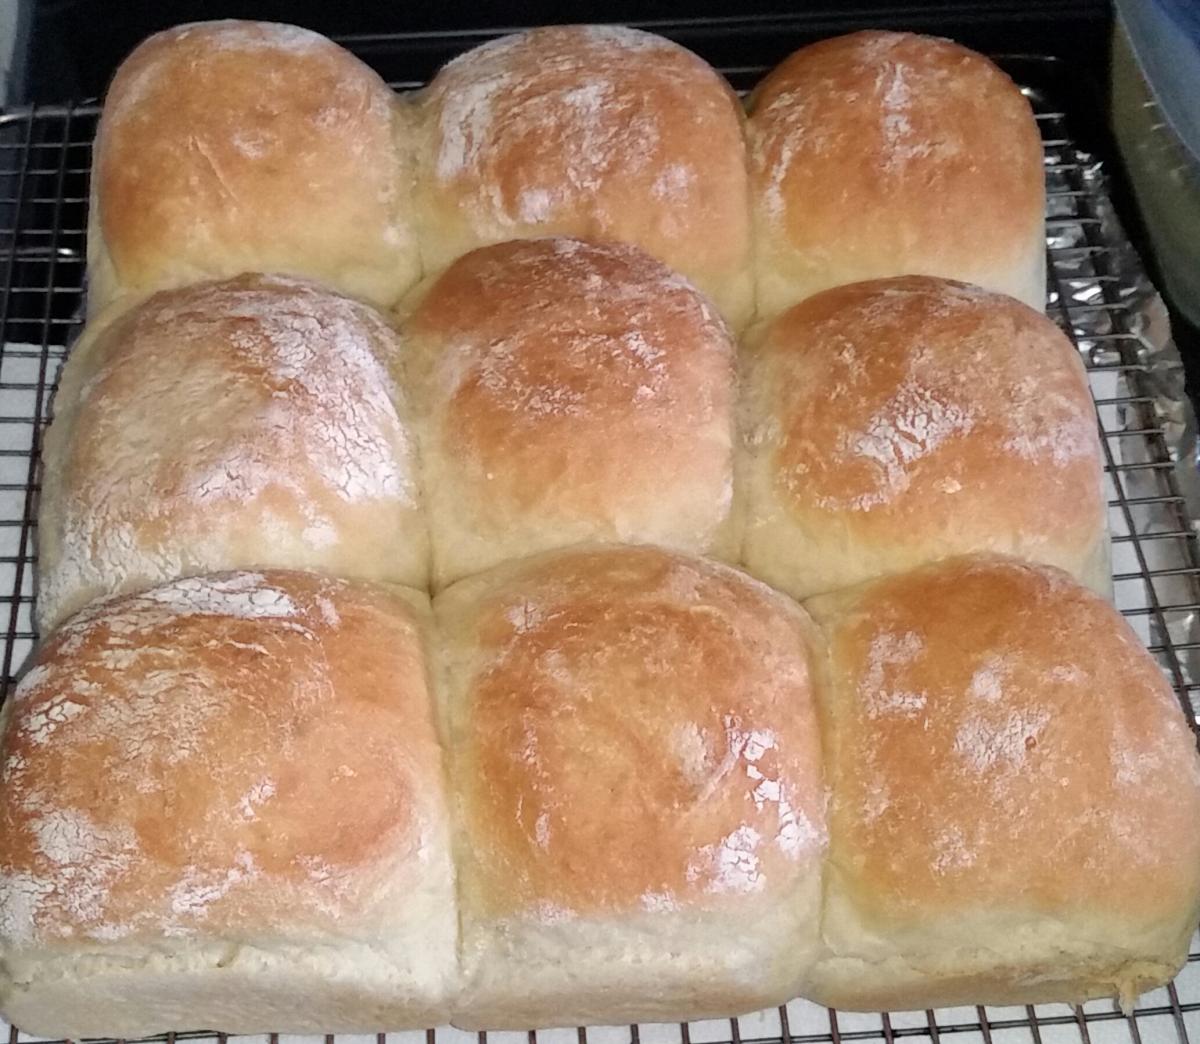 2018 06 11 17.23.47 fluffy buns